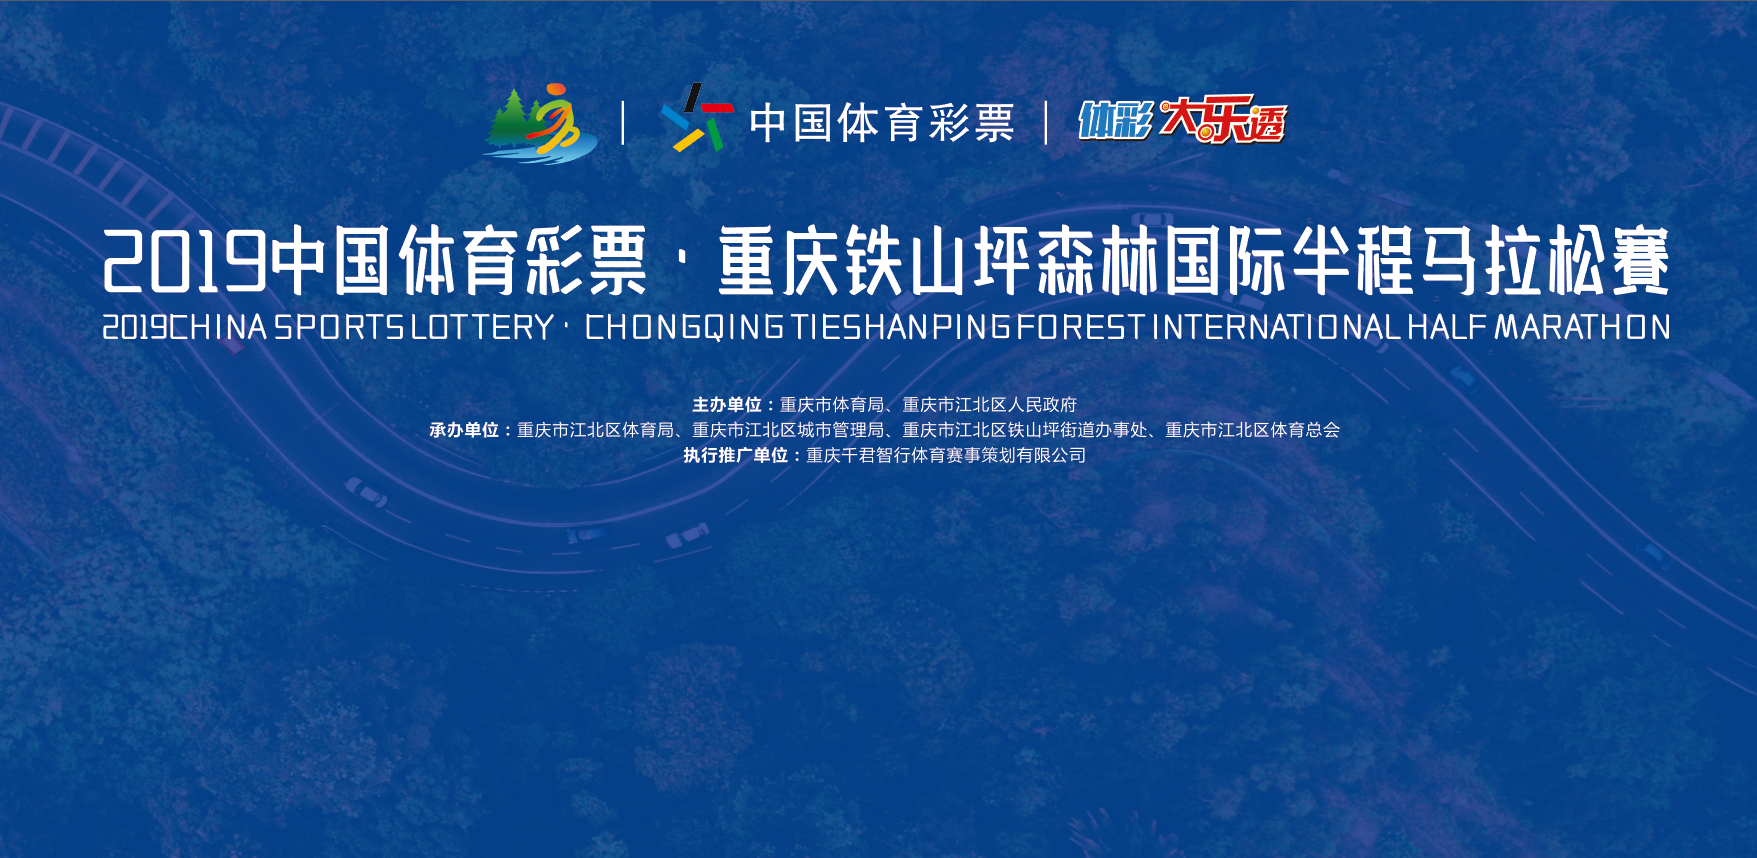 2019中国体育彩票 重庆铁山坪森林国际半程马拉松赛